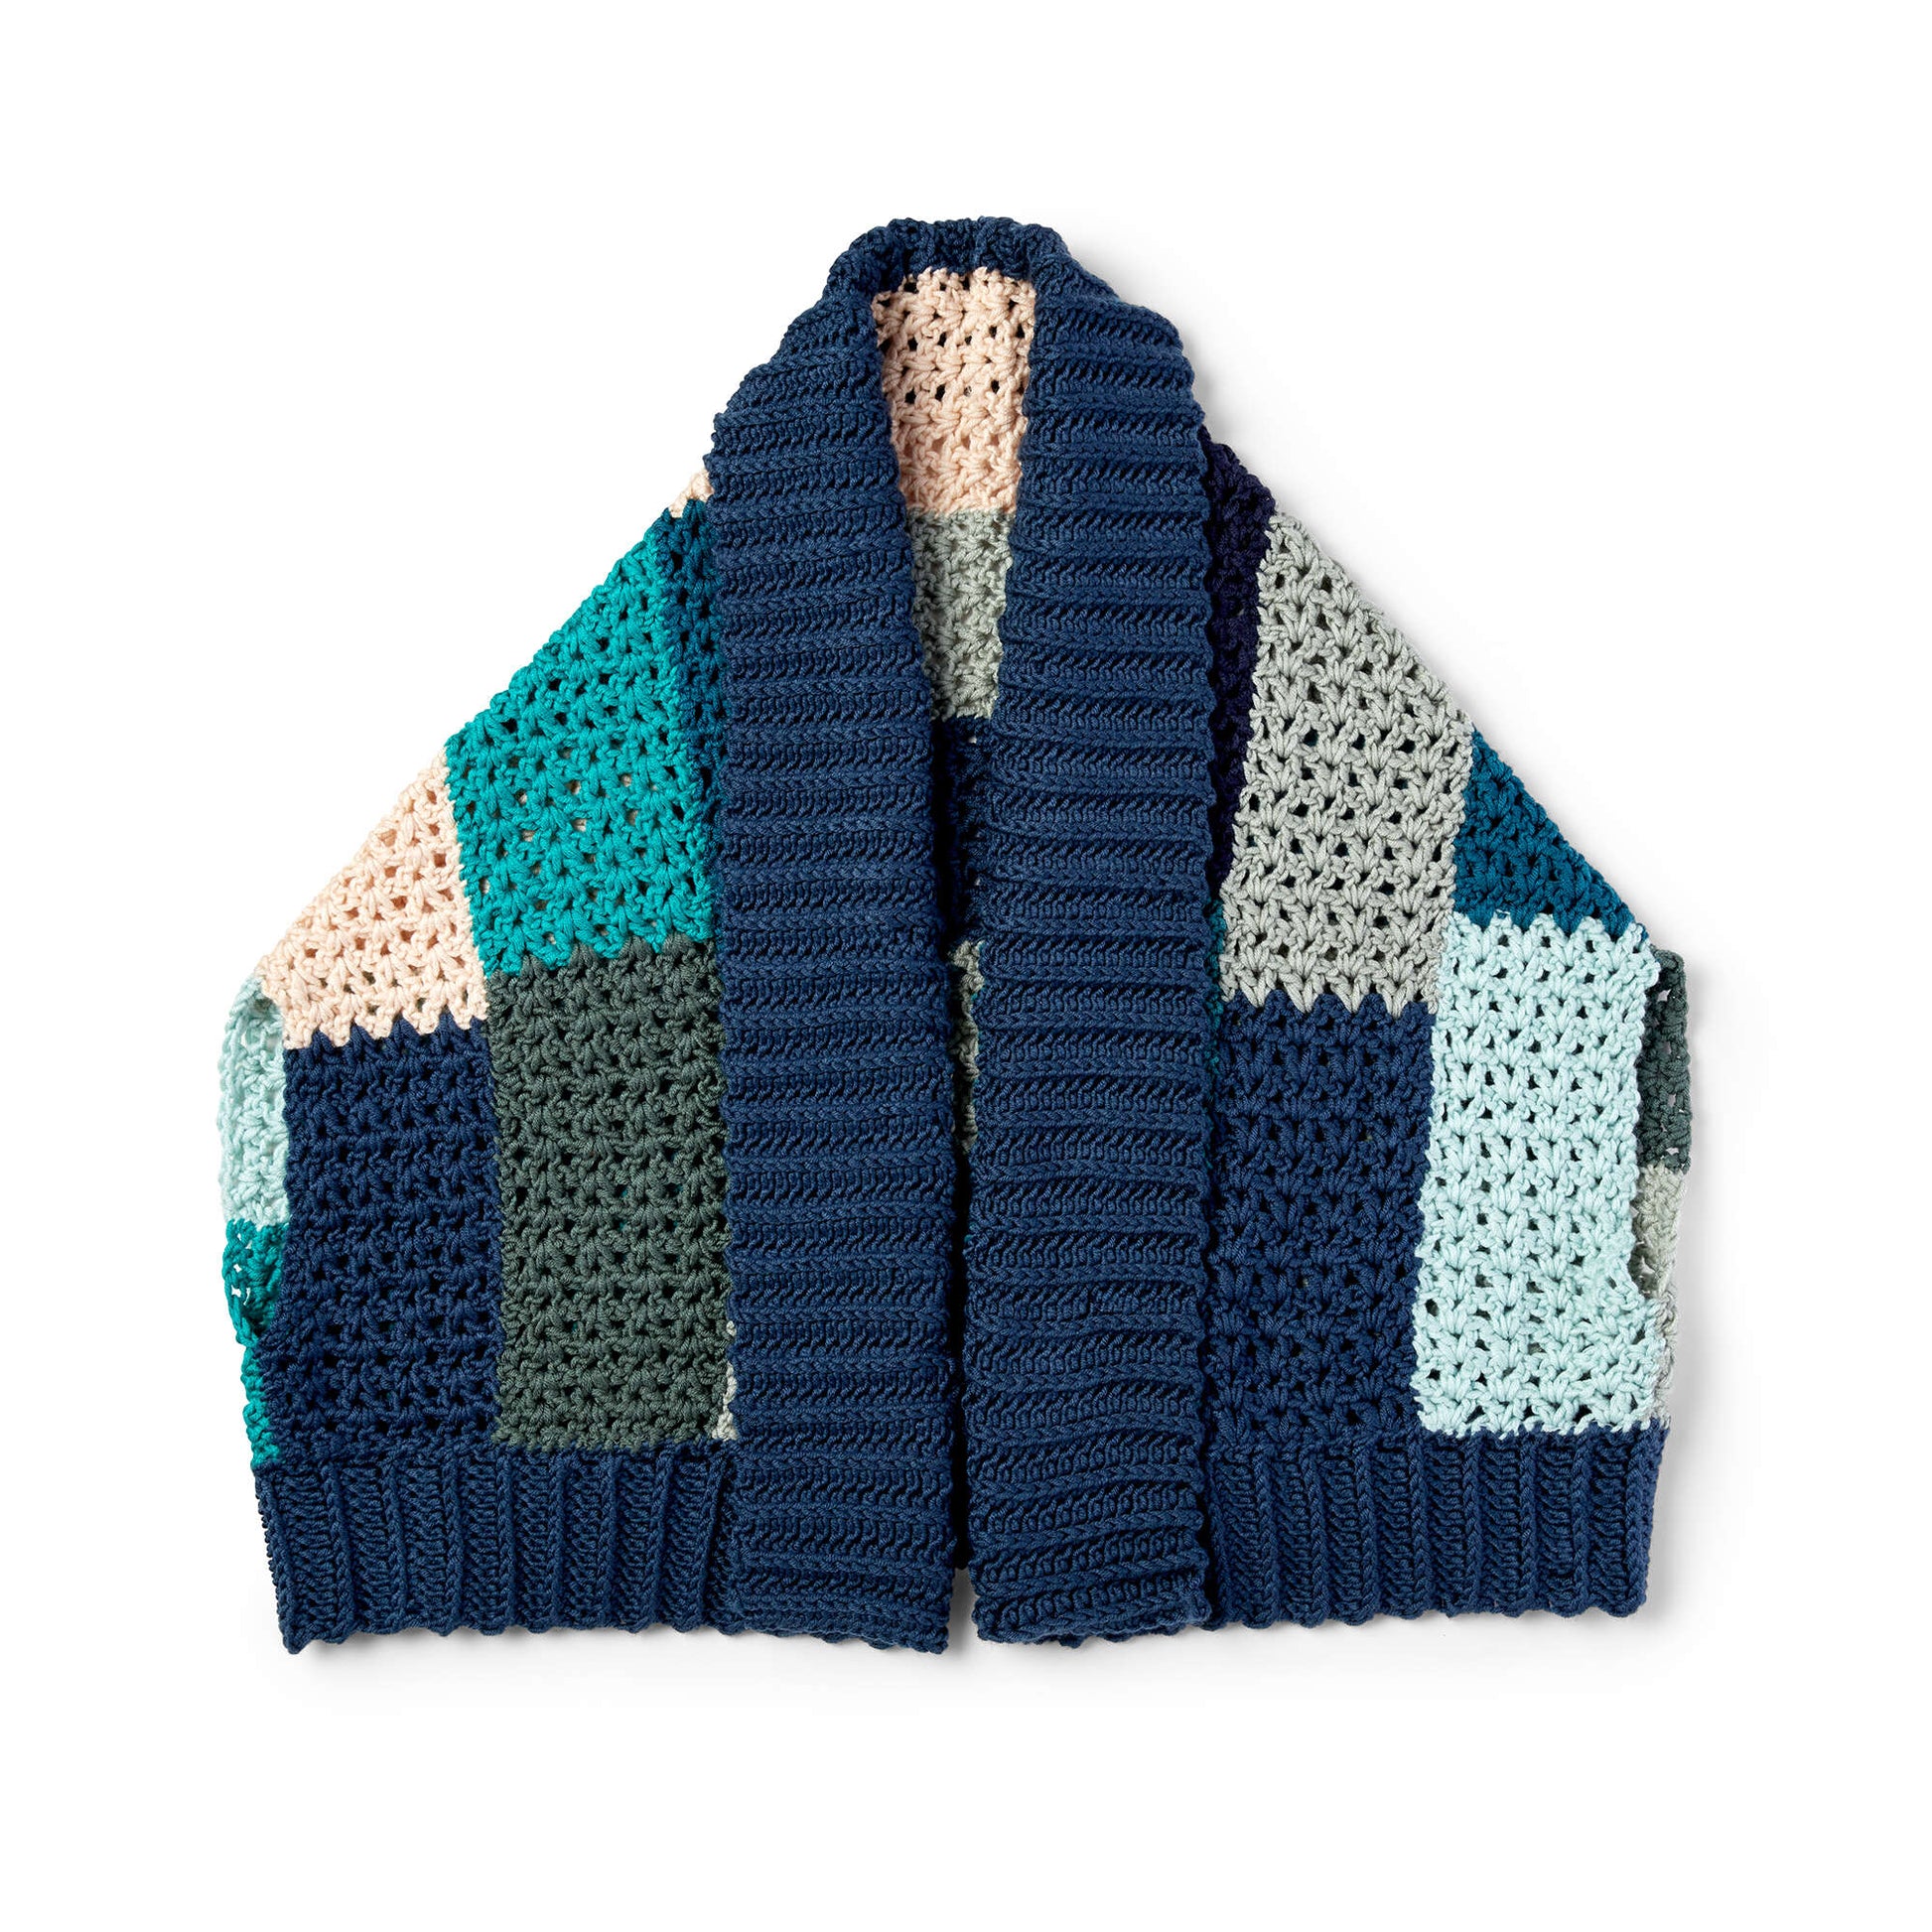 Free Caron X Pantone Crochet Boxy Garment Pattern